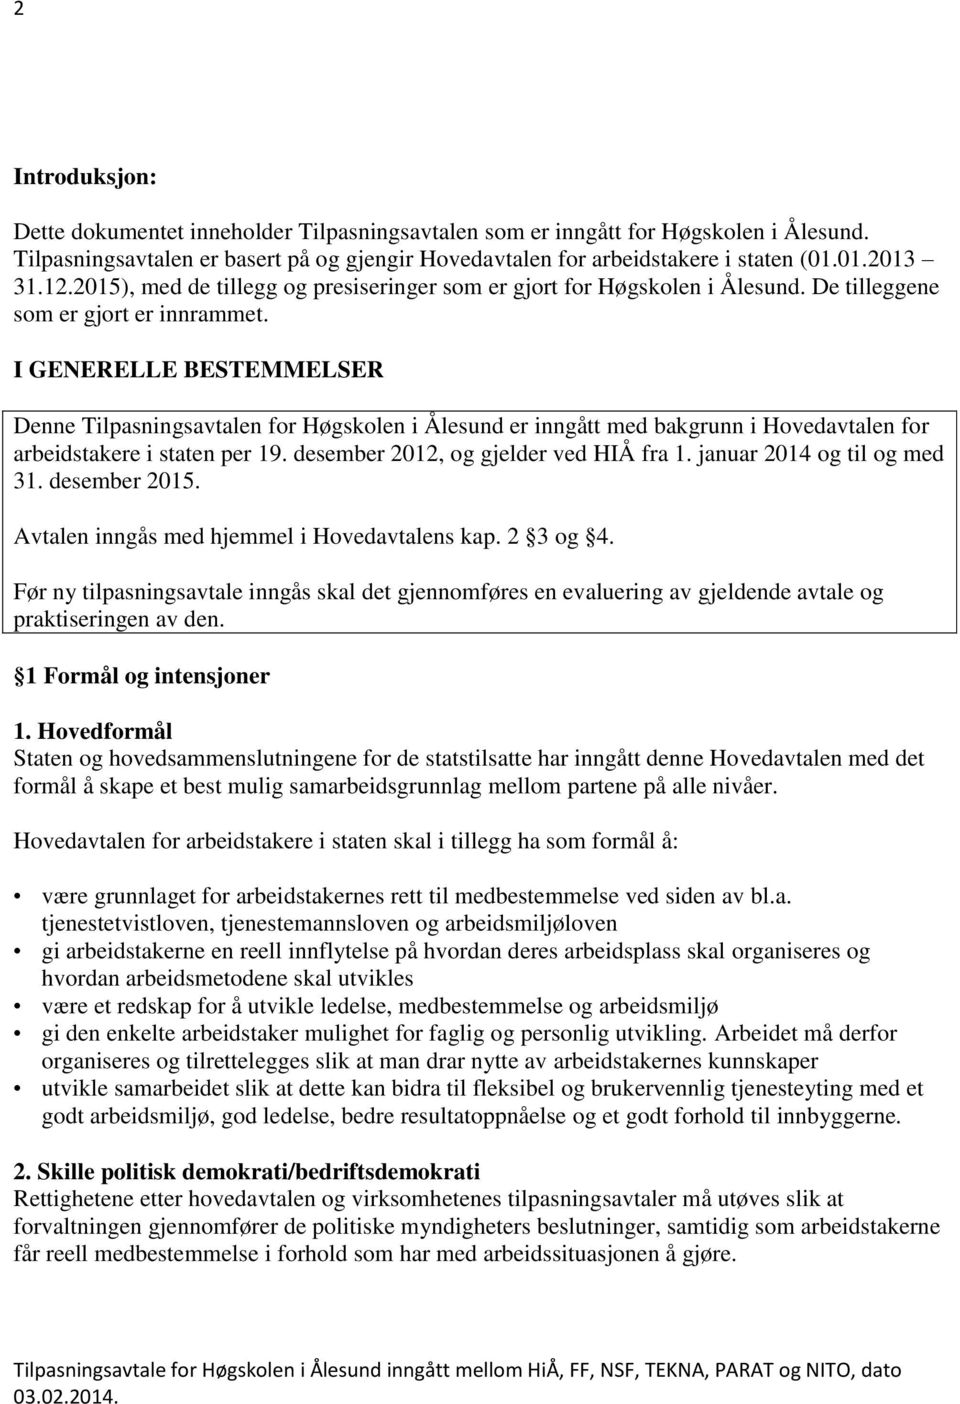 I GENERELLE BESTEMMELSER Denne Tilpasningsavtalen for Høgskolen i Ålesund er inngått med bakgrunn i Hovedavtalen for arbeidstakere i staten per 19. desember 2012, og gjelder ved HIÅ fra 1.